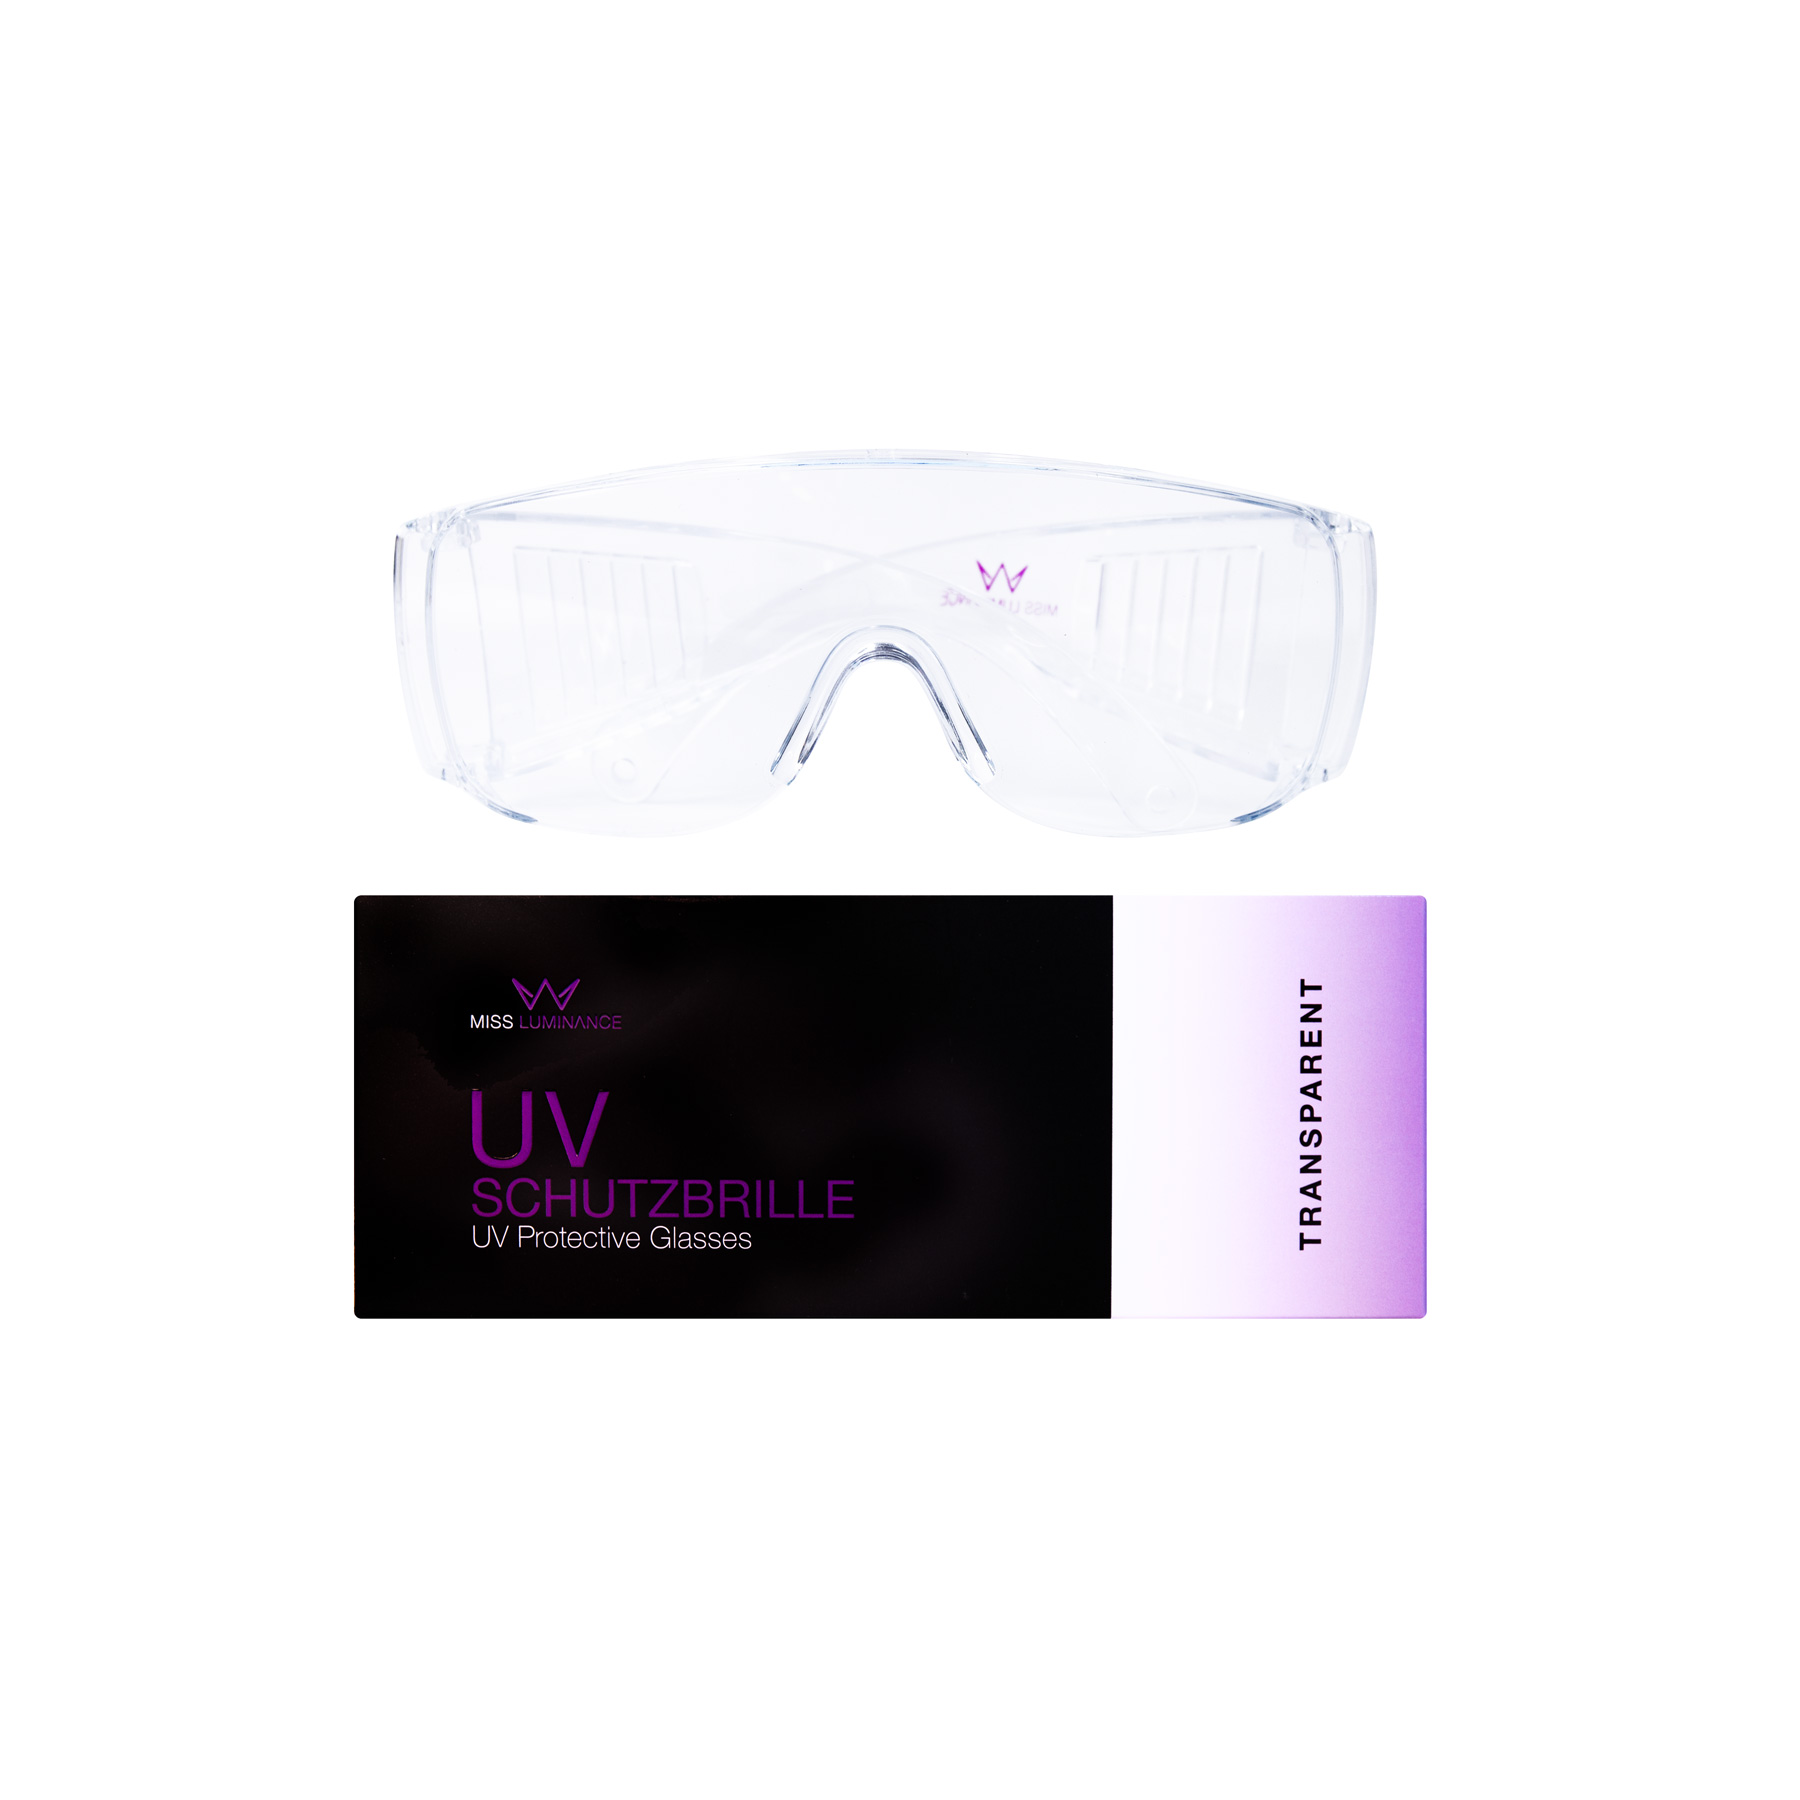 UV-Safety glasses